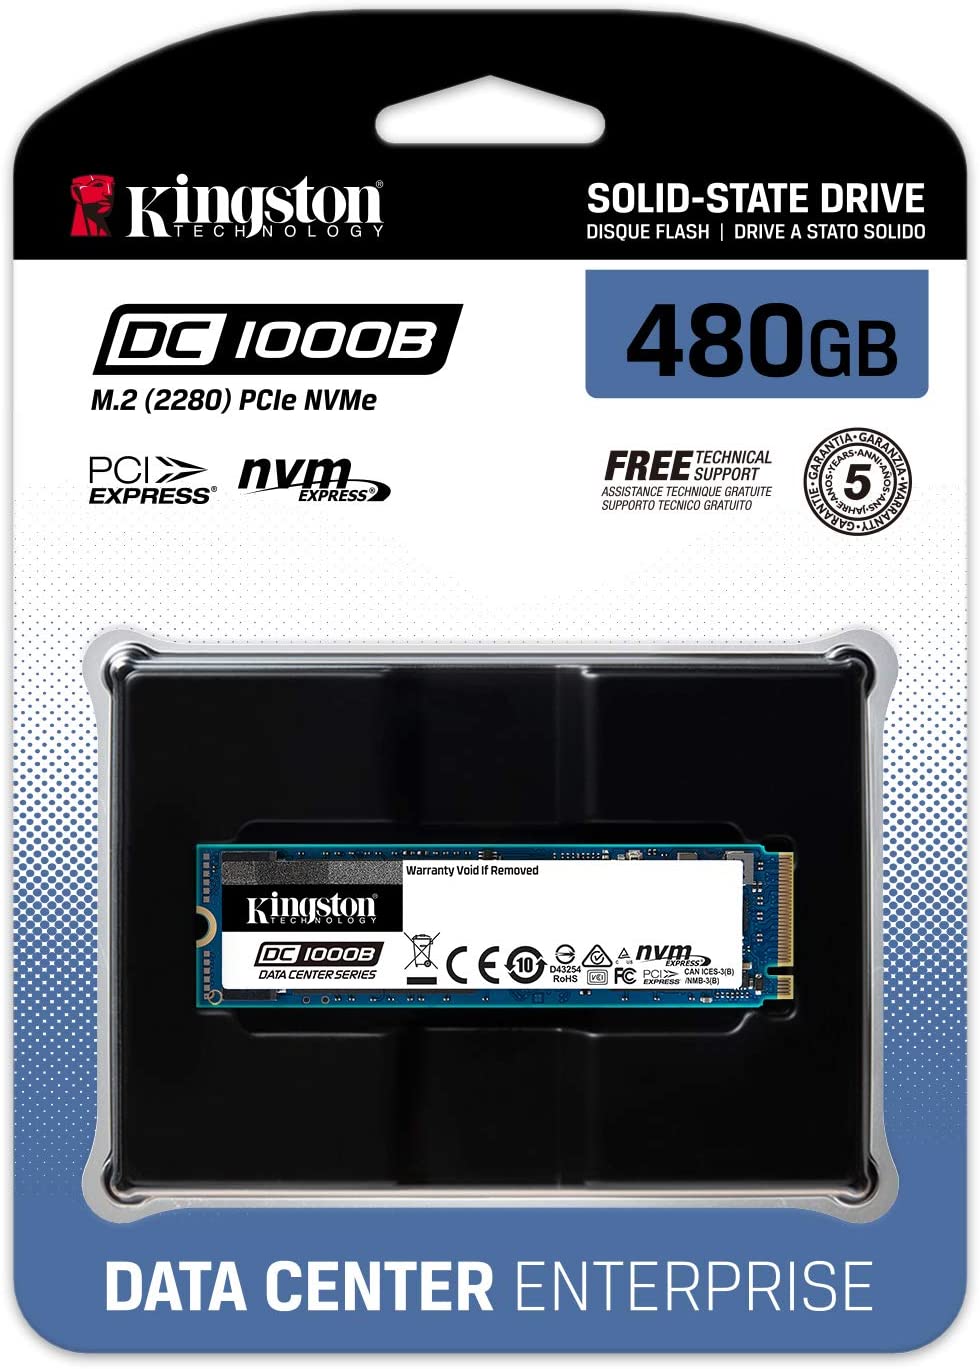 Kingston 480G DC1000B M.2 2280 NVME SSD